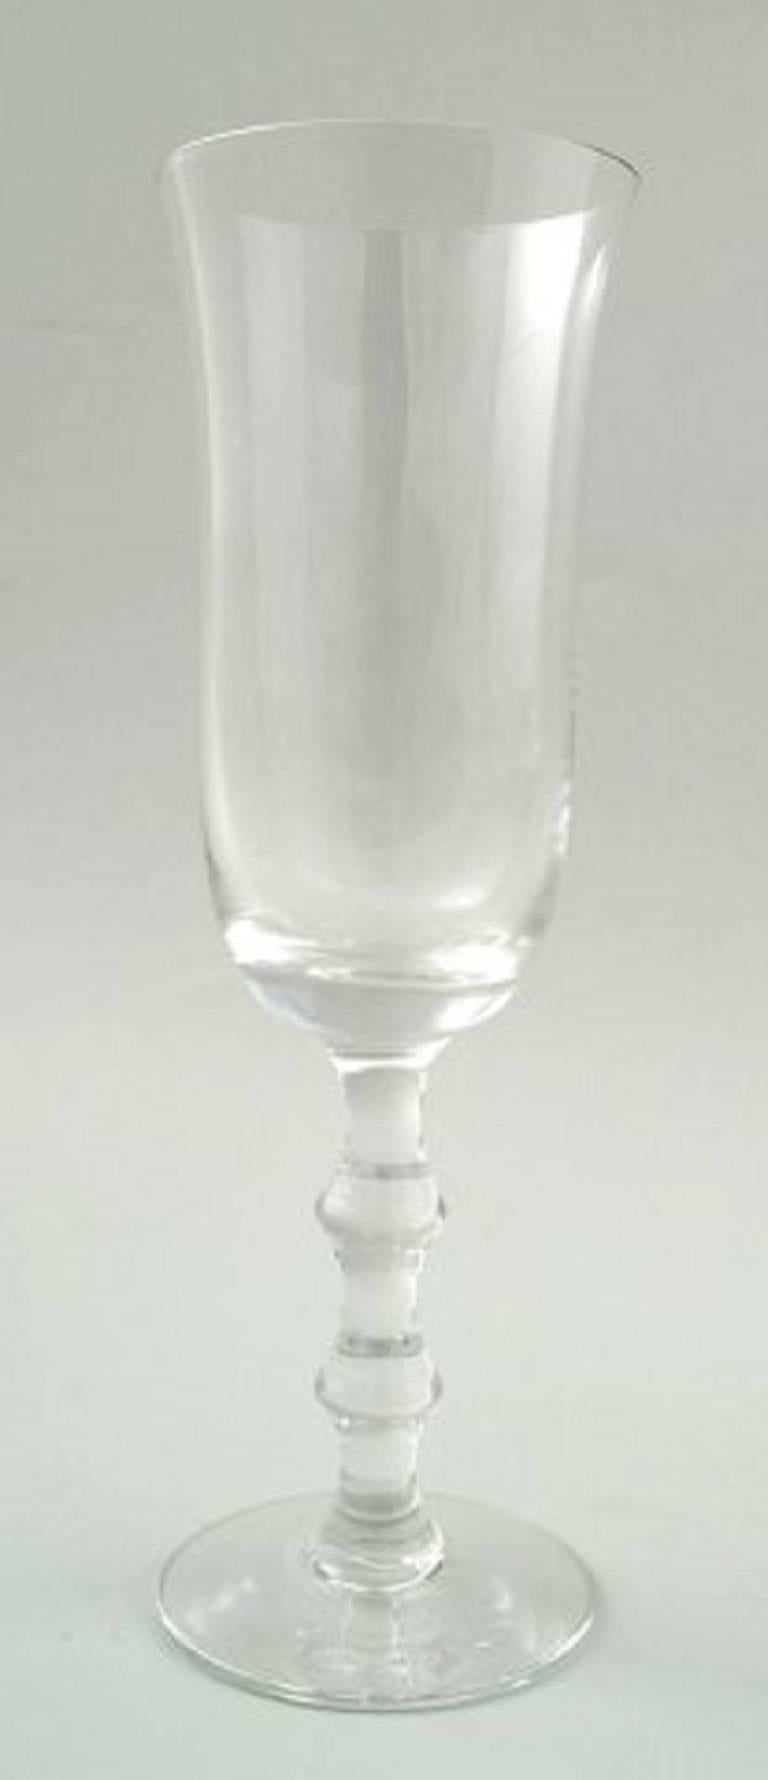 Simon Gate for Orrefors, A set of four champagne art glasses. 
Designer: Simon Gate.
Series: Salut
Producer: Orrefors
Country: Sweden
Designed: 1923
Size: Height 19 cm, diameter 6 cm.